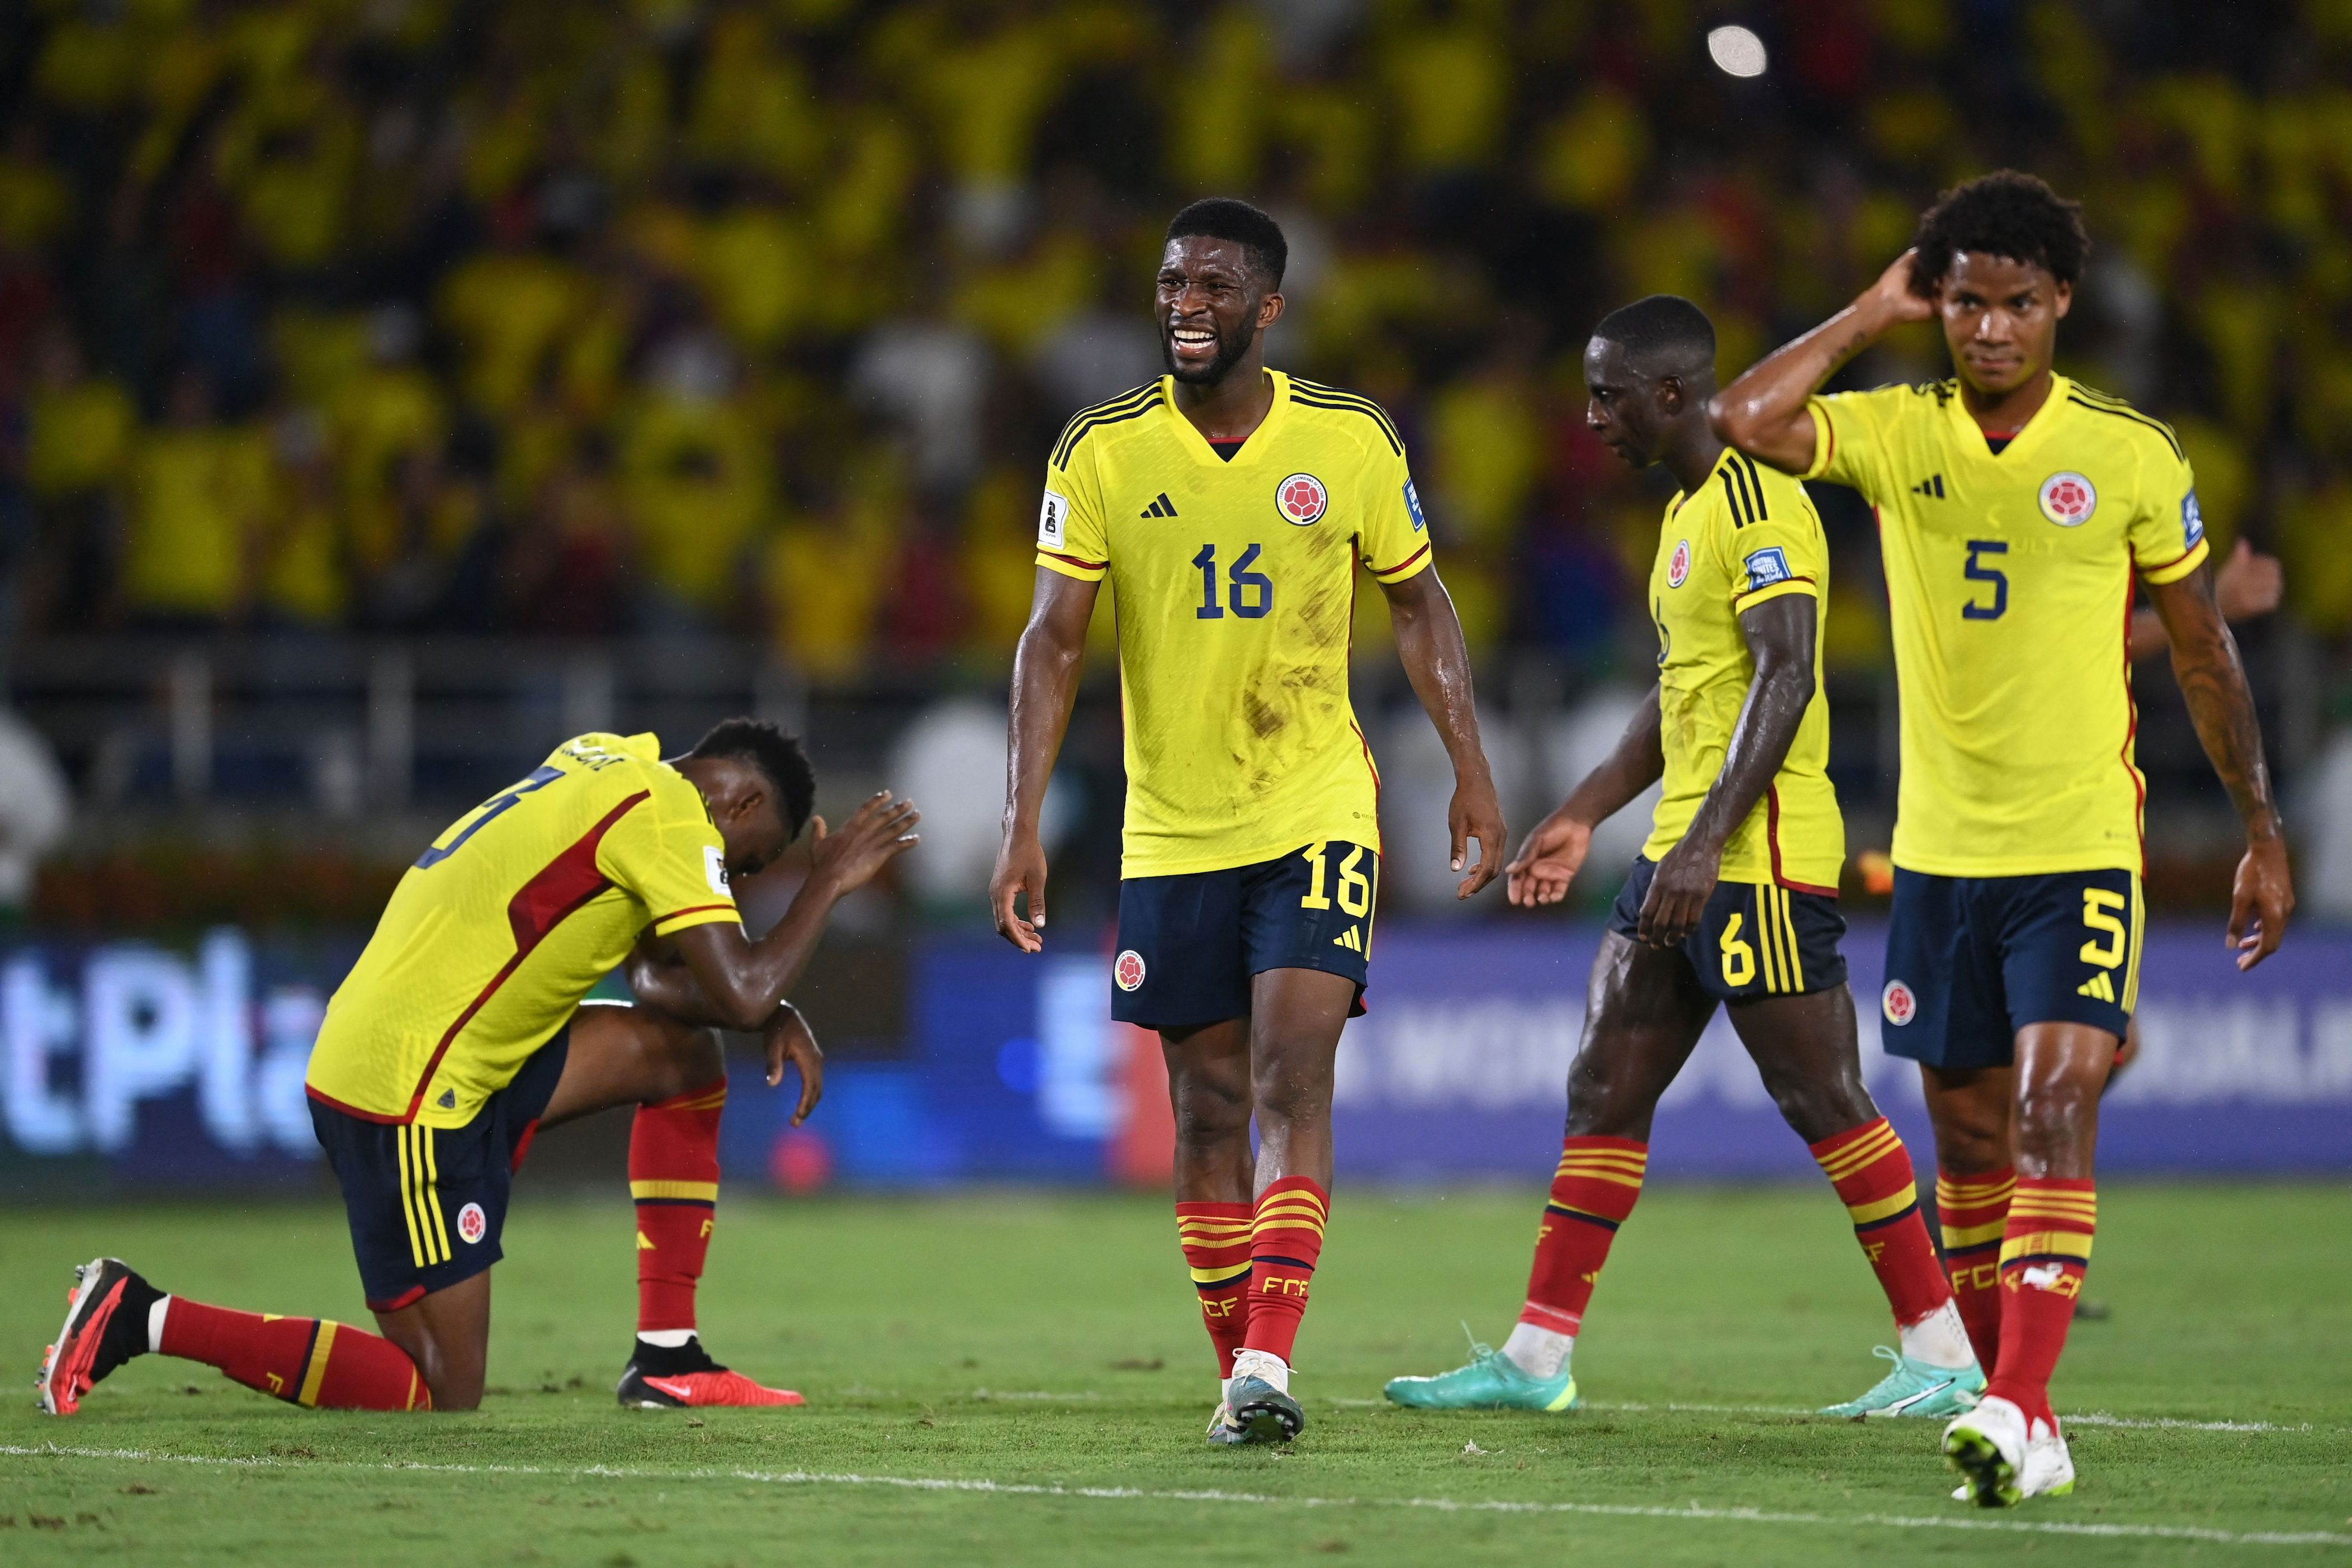 Colombia vs. Uruguay este es el resultado exacto que predice la IA